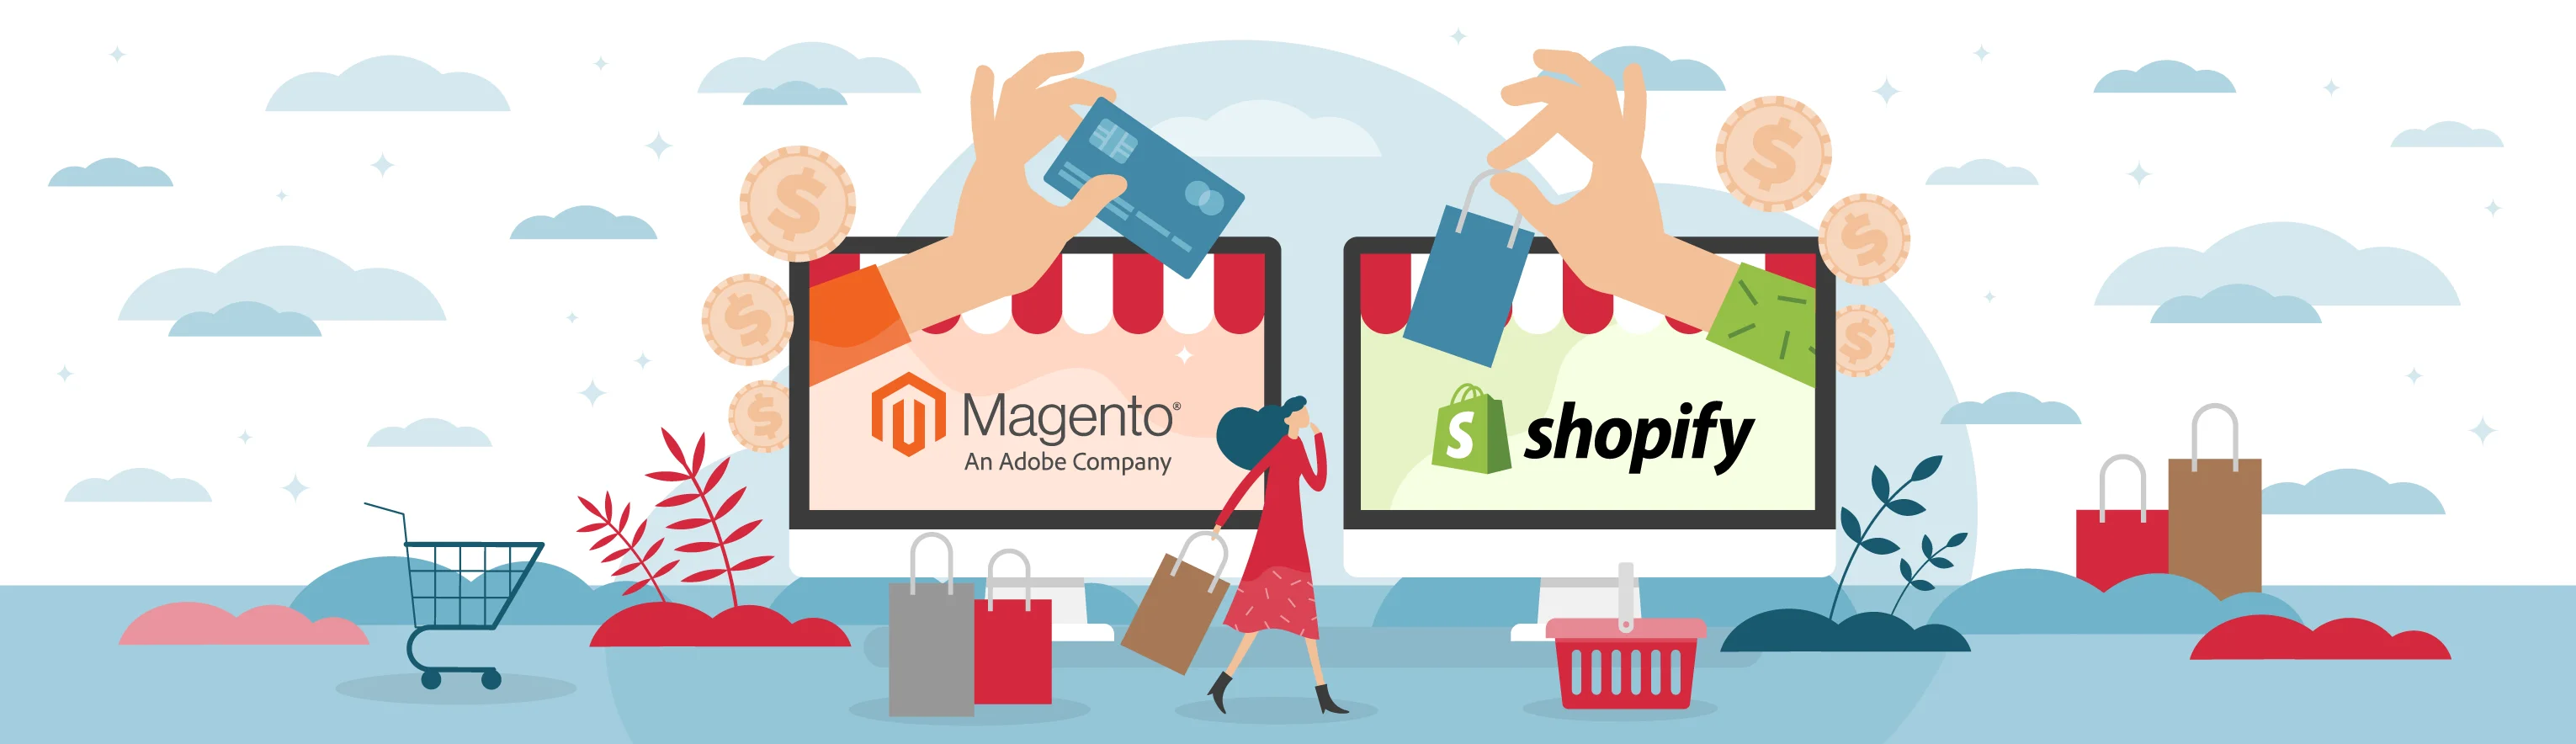 SHOPIFY VS. Magento：哪种电子商务解决方案适合您的业务？